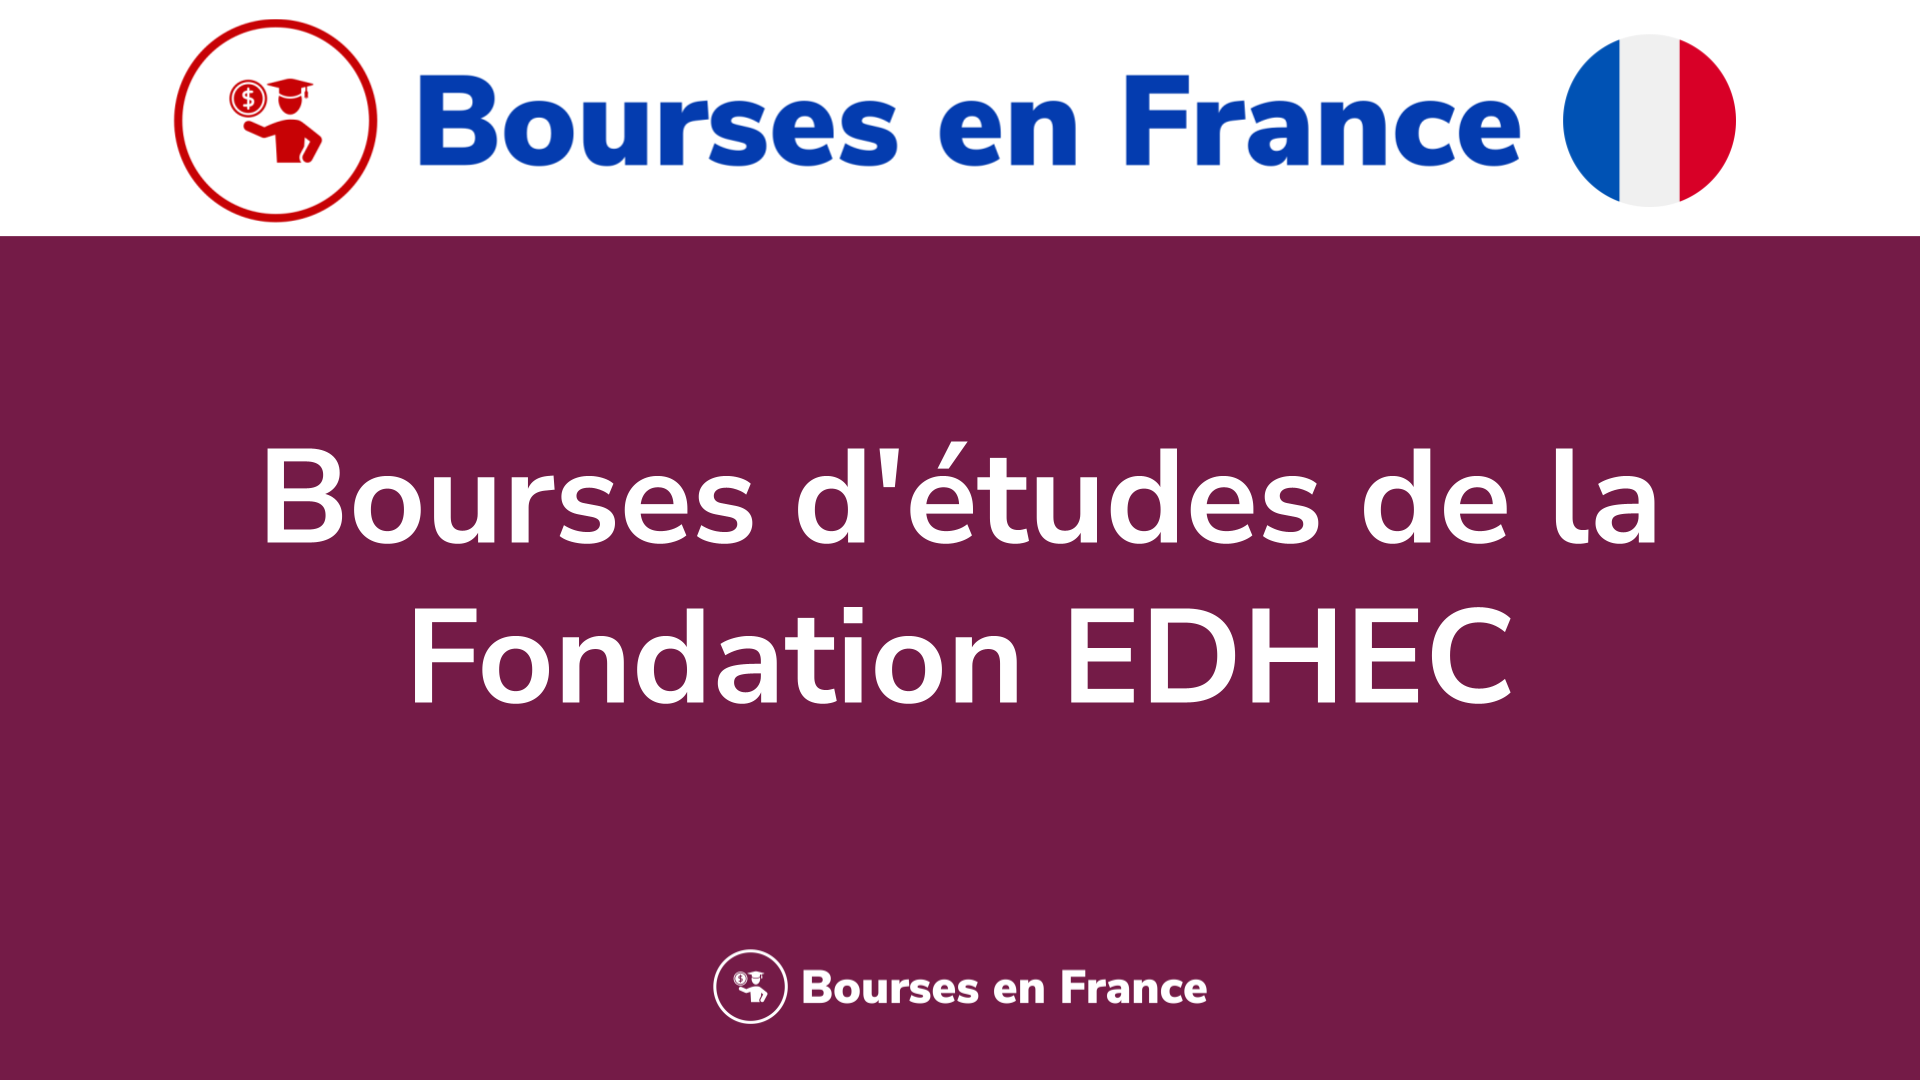 Bourses d'études Fondation EDHEC